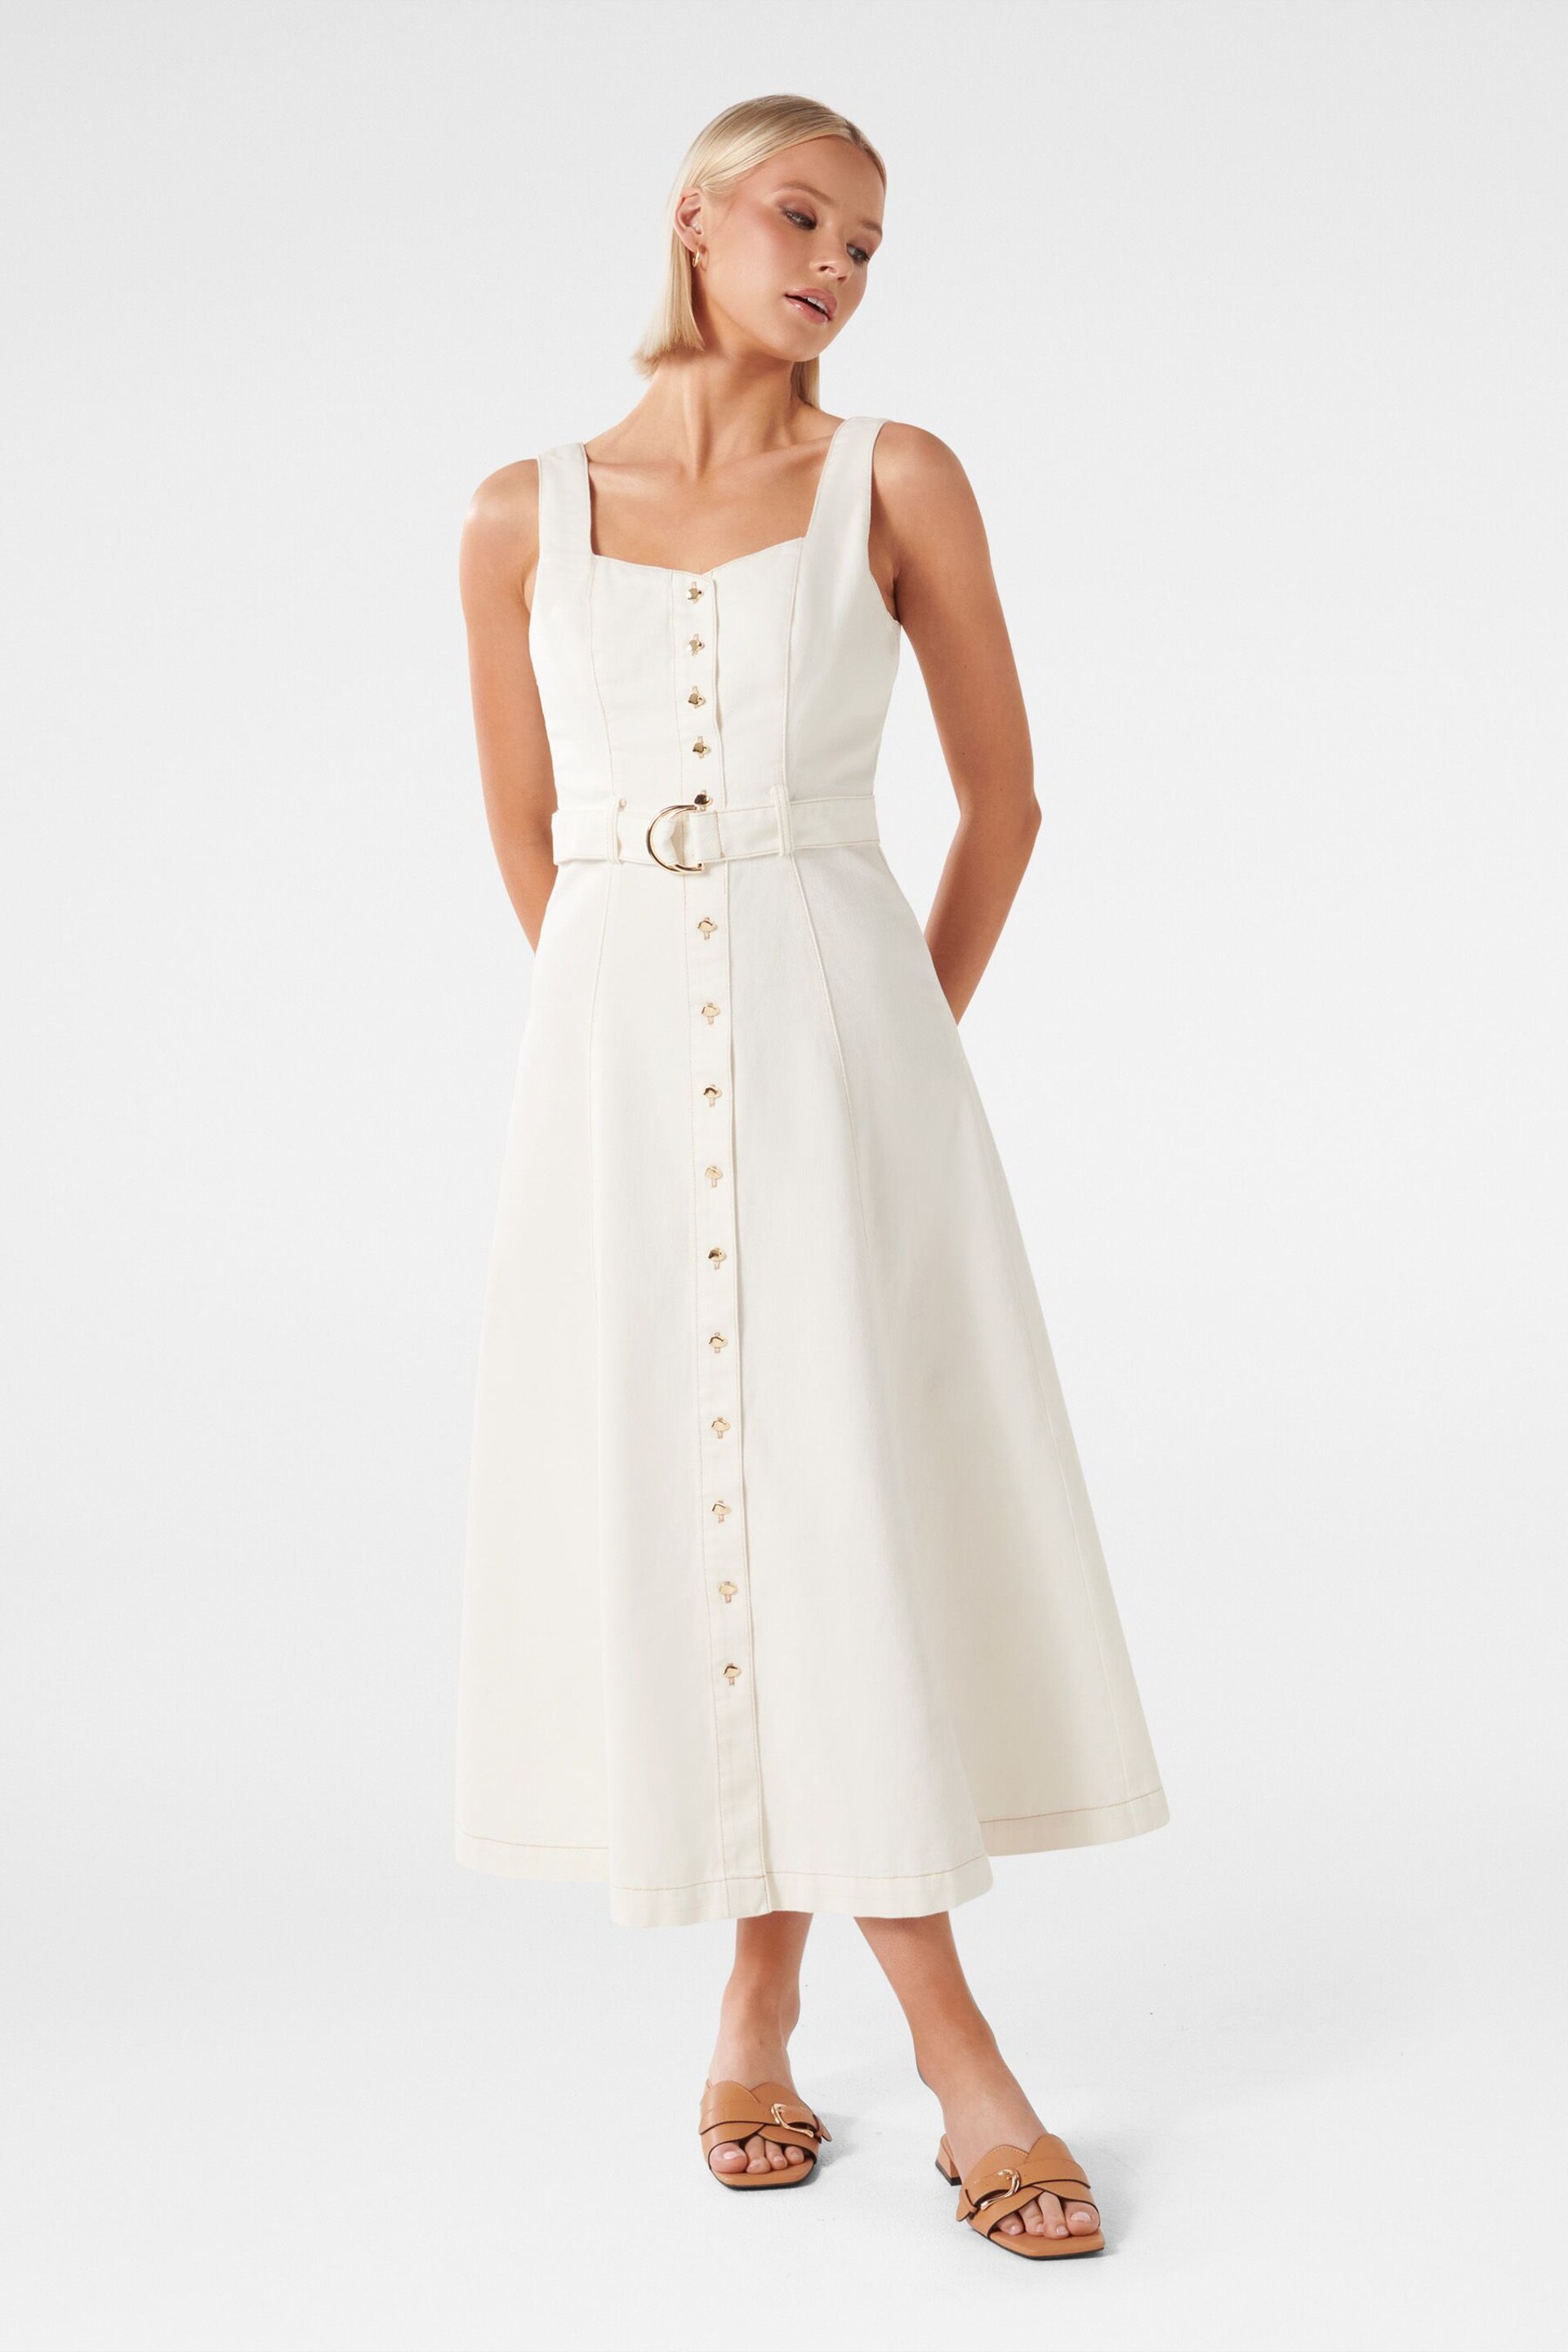 Forever New White Maja Denim Dress - Image 1 of 4